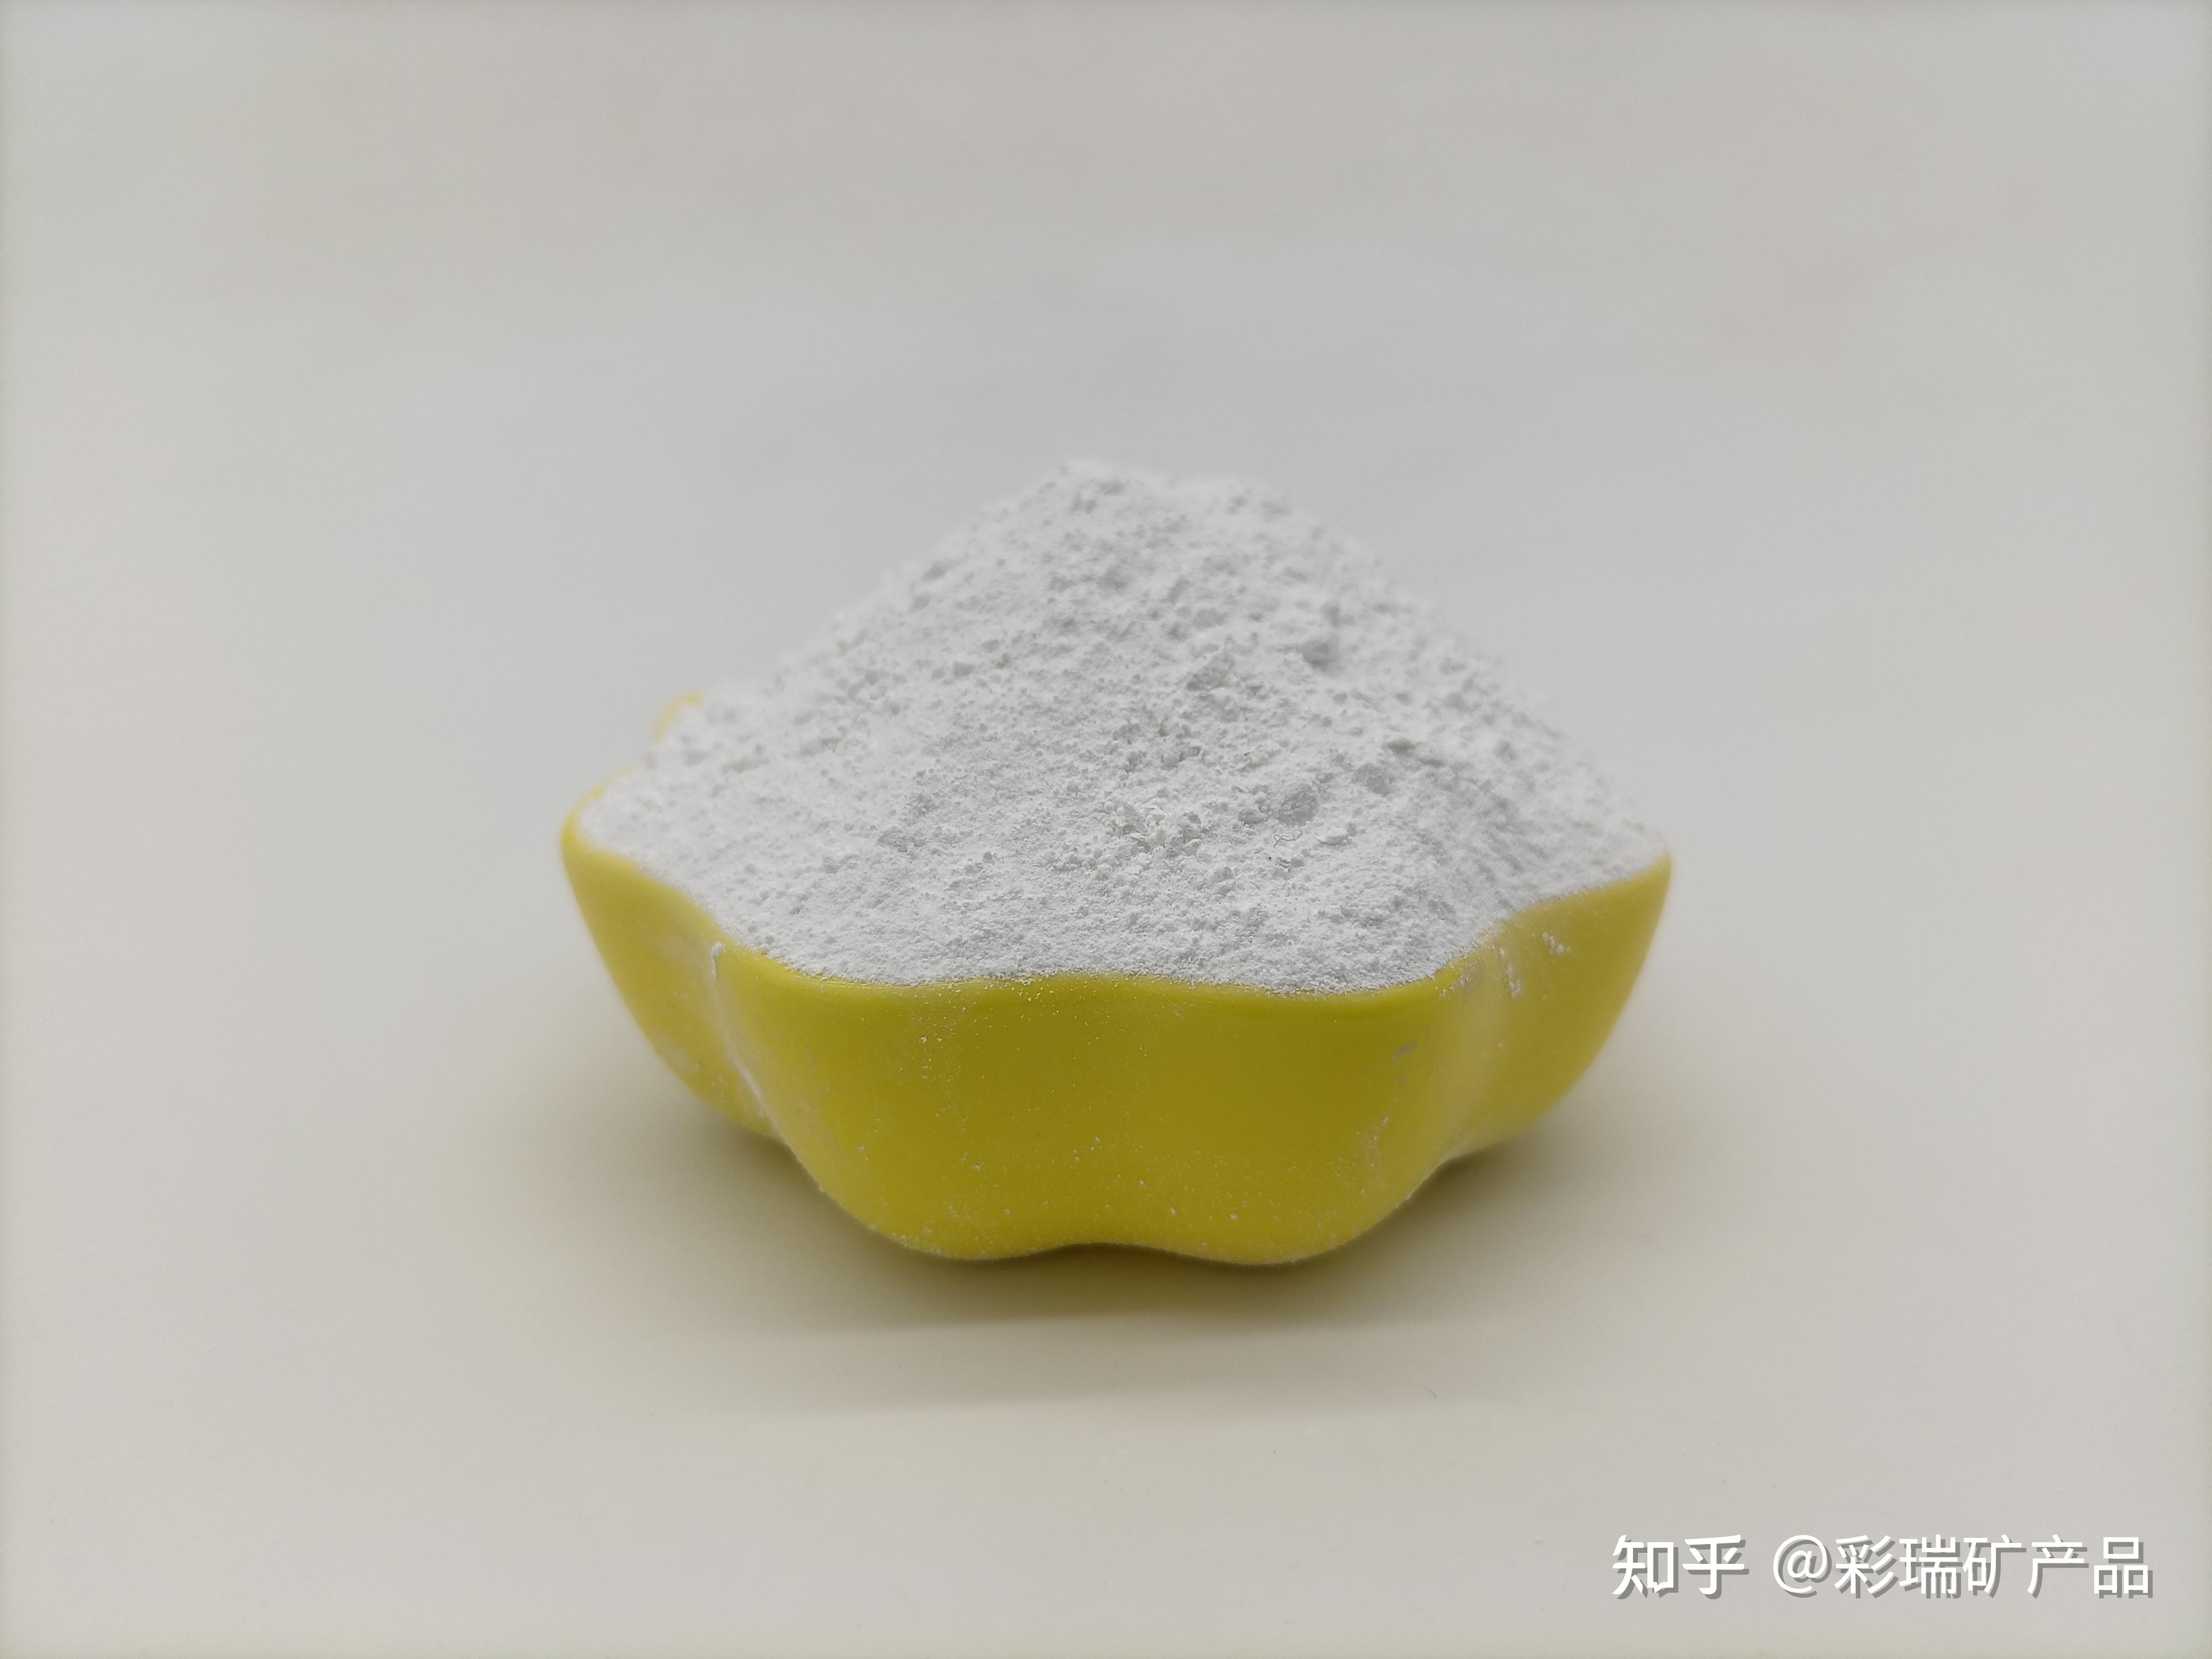 pvc糊树脂固体粉末添加什么可以降低粘度增加流动性必须也是粉末的